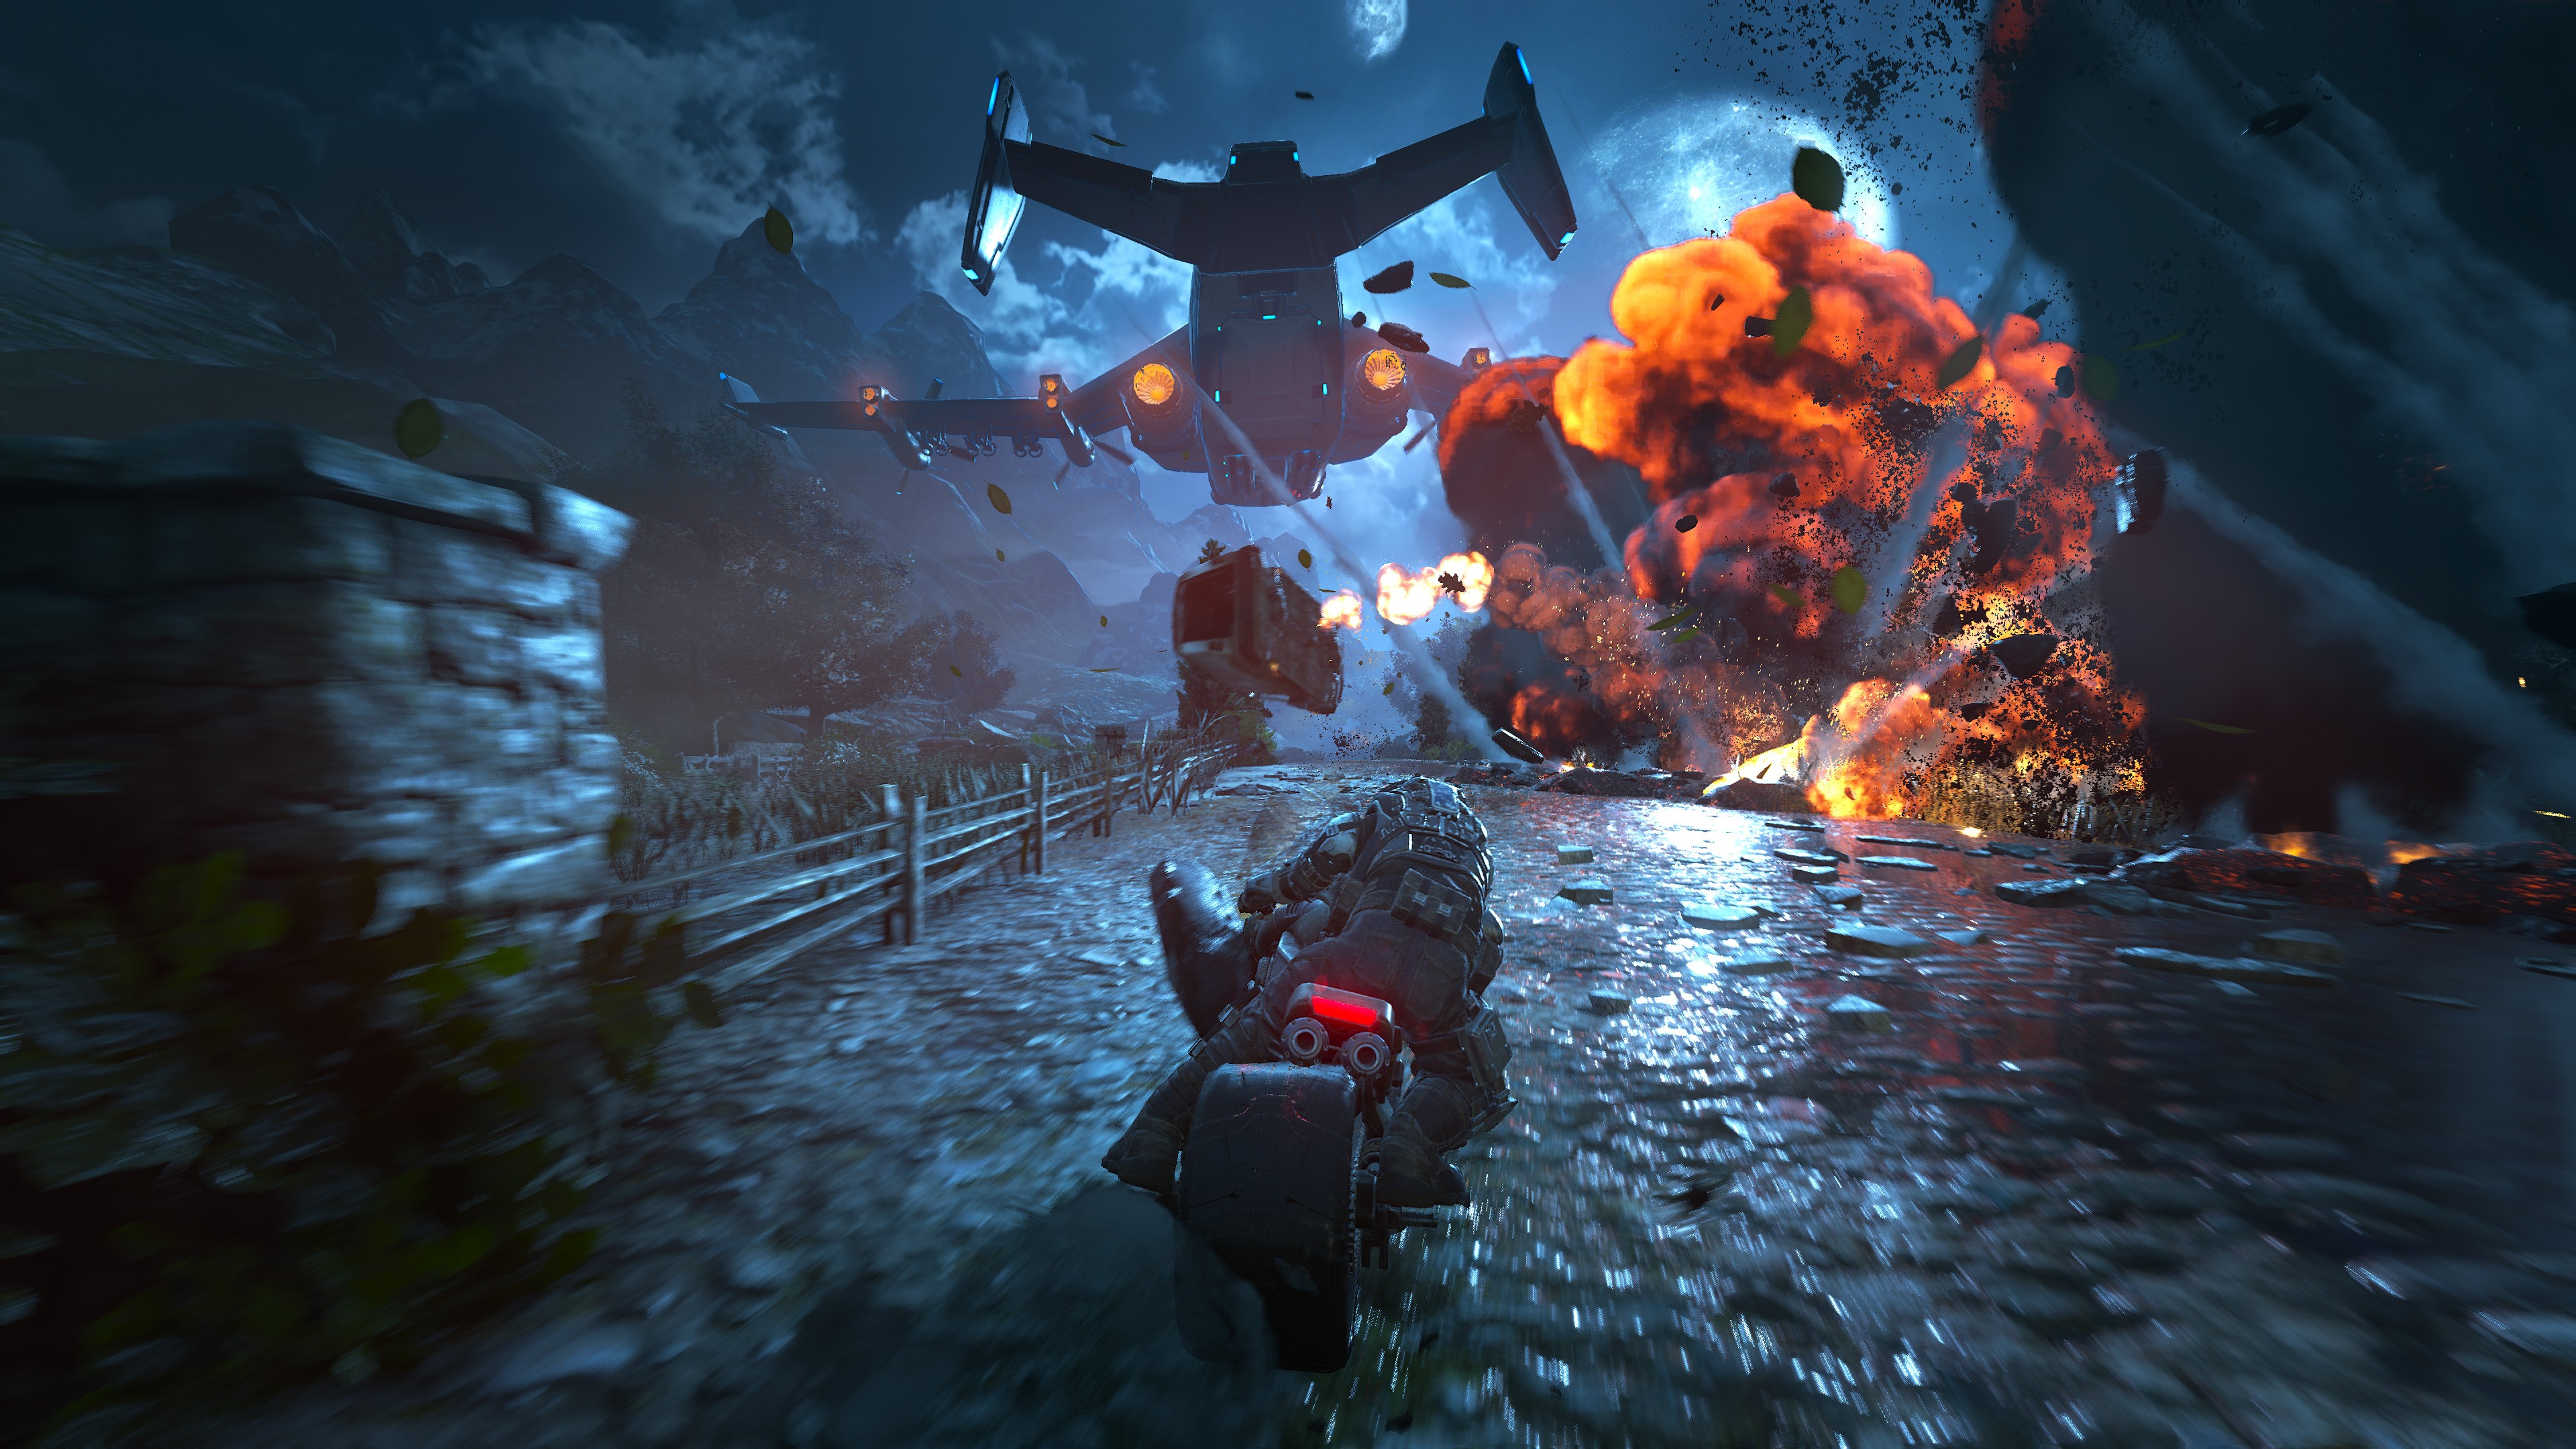 Gears of War 4 1080P, 2k, 4k Full HD Wallpaper, Background Free Download